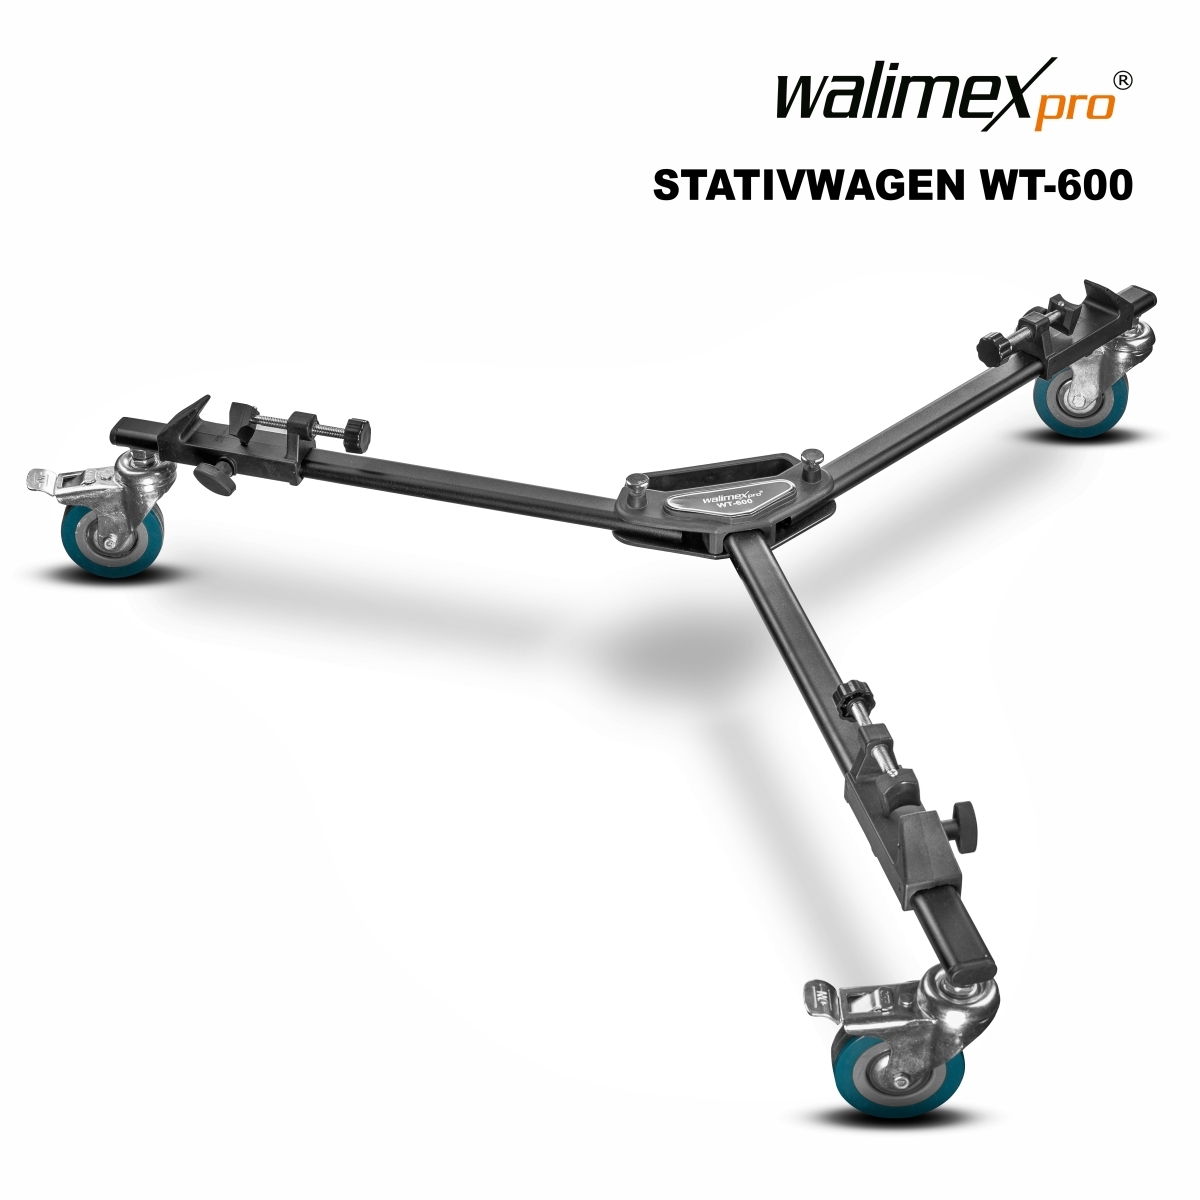 Walimex pro WT-600 Stativwagen